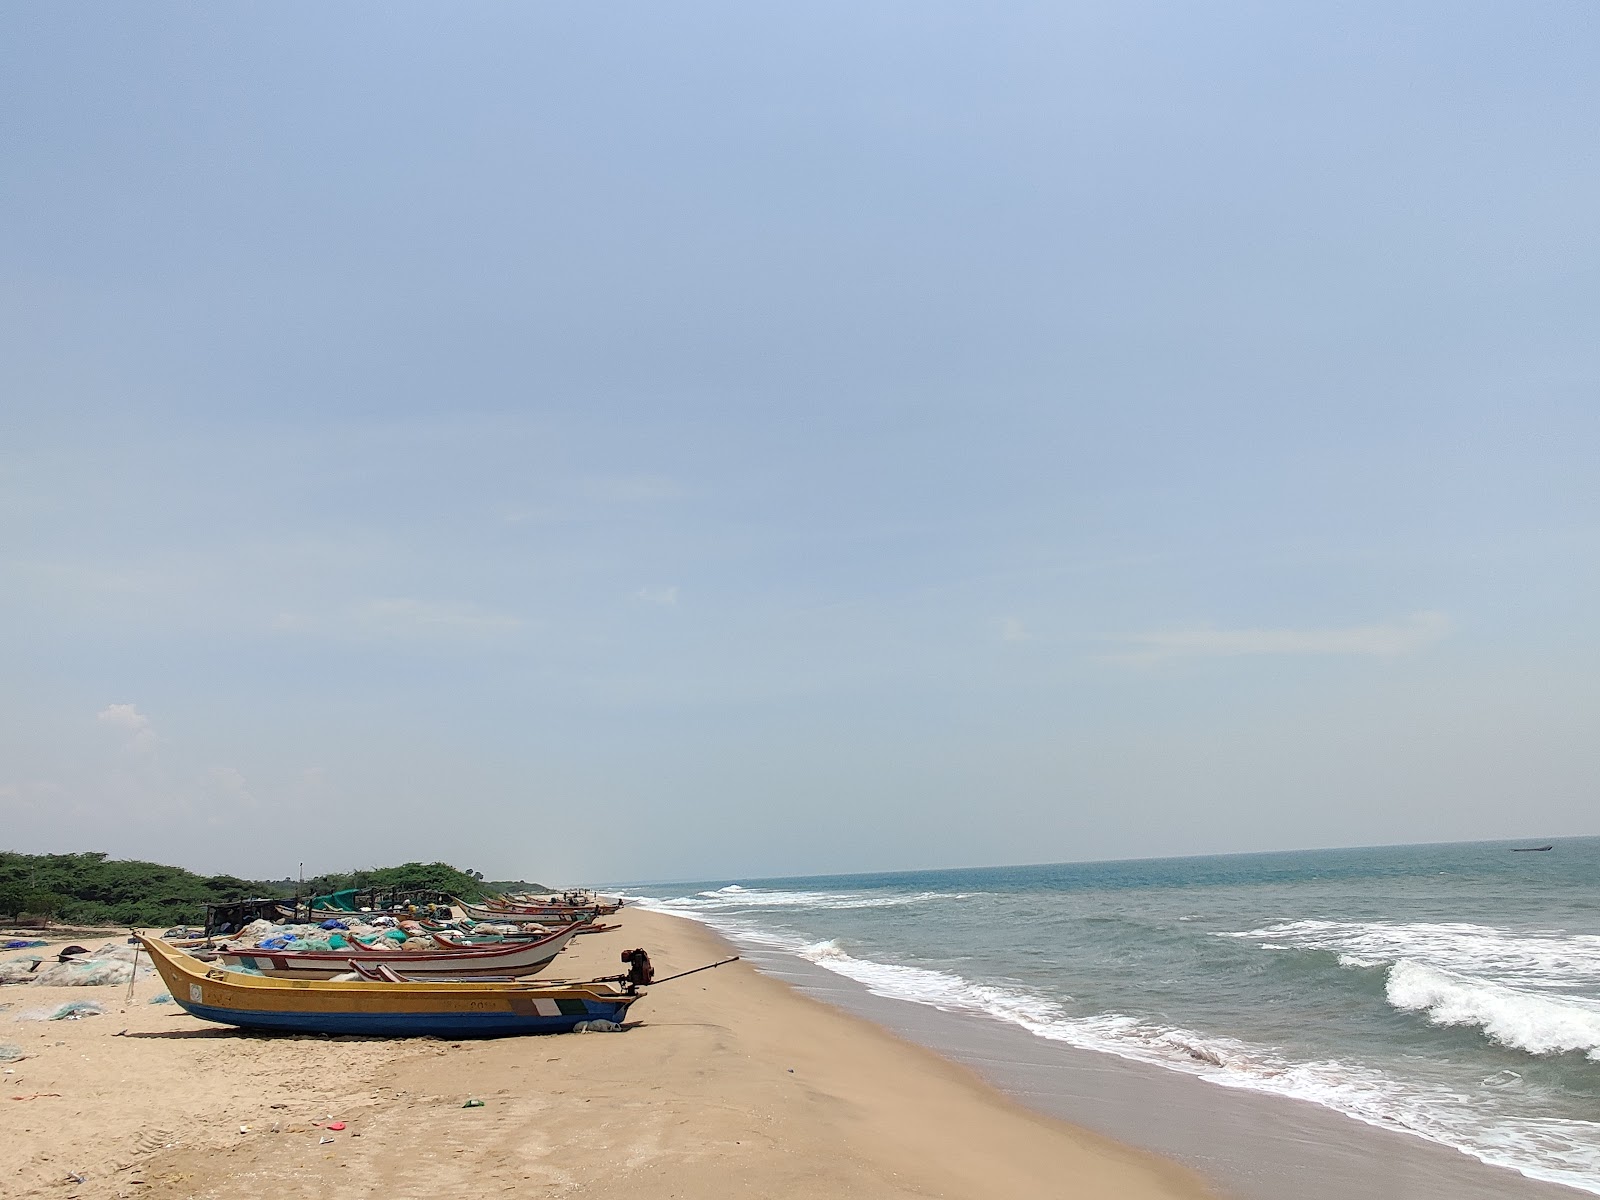 Ramayapattanam public Beach'in fotoğrafı kısmen temiz temizlik seviyesi ile